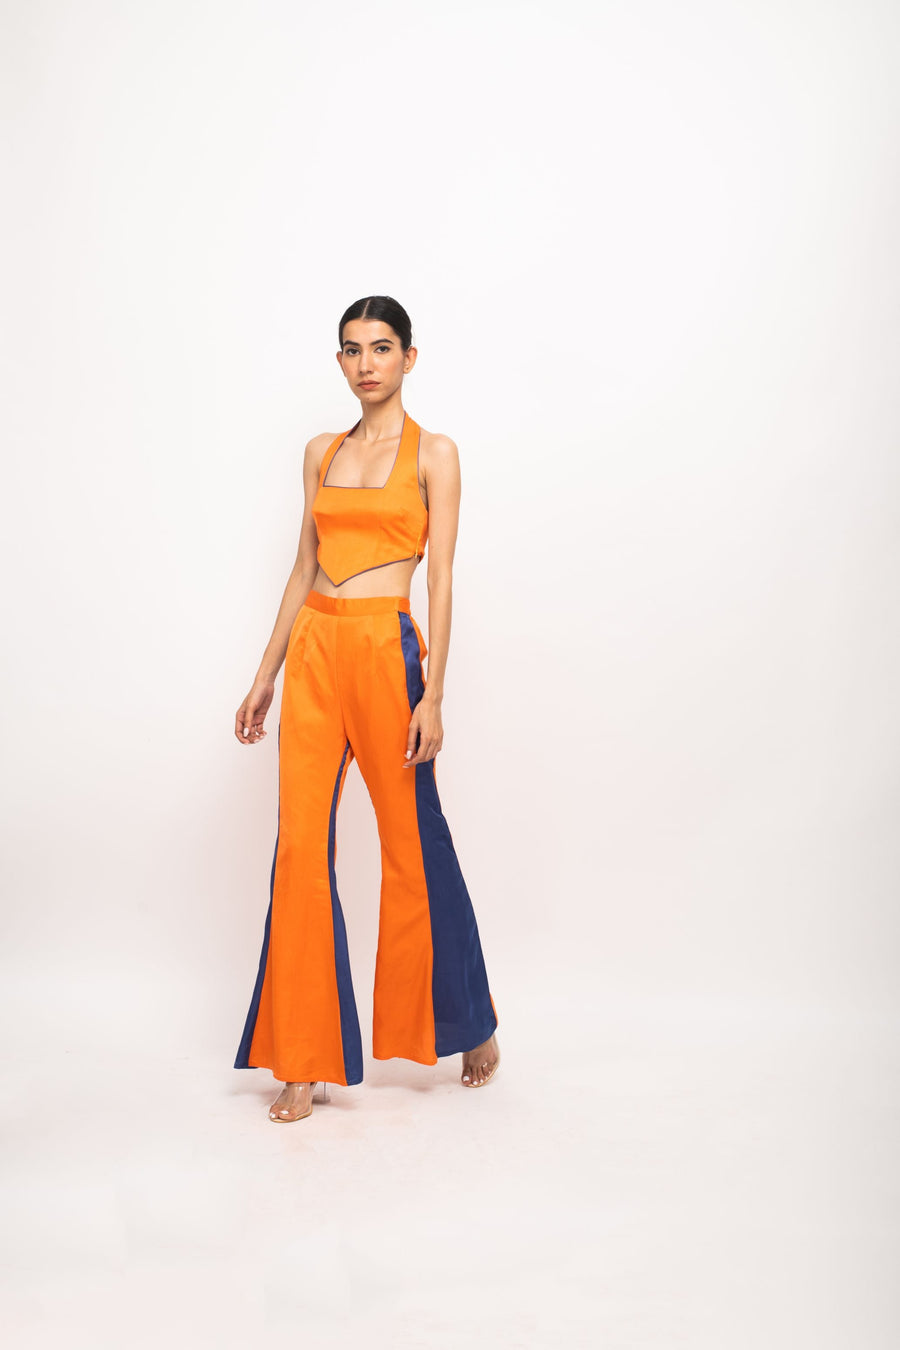 A Model Wearing Orange Bemberg Orange-Blue Halter Neck Set, curated by Only Ethikal